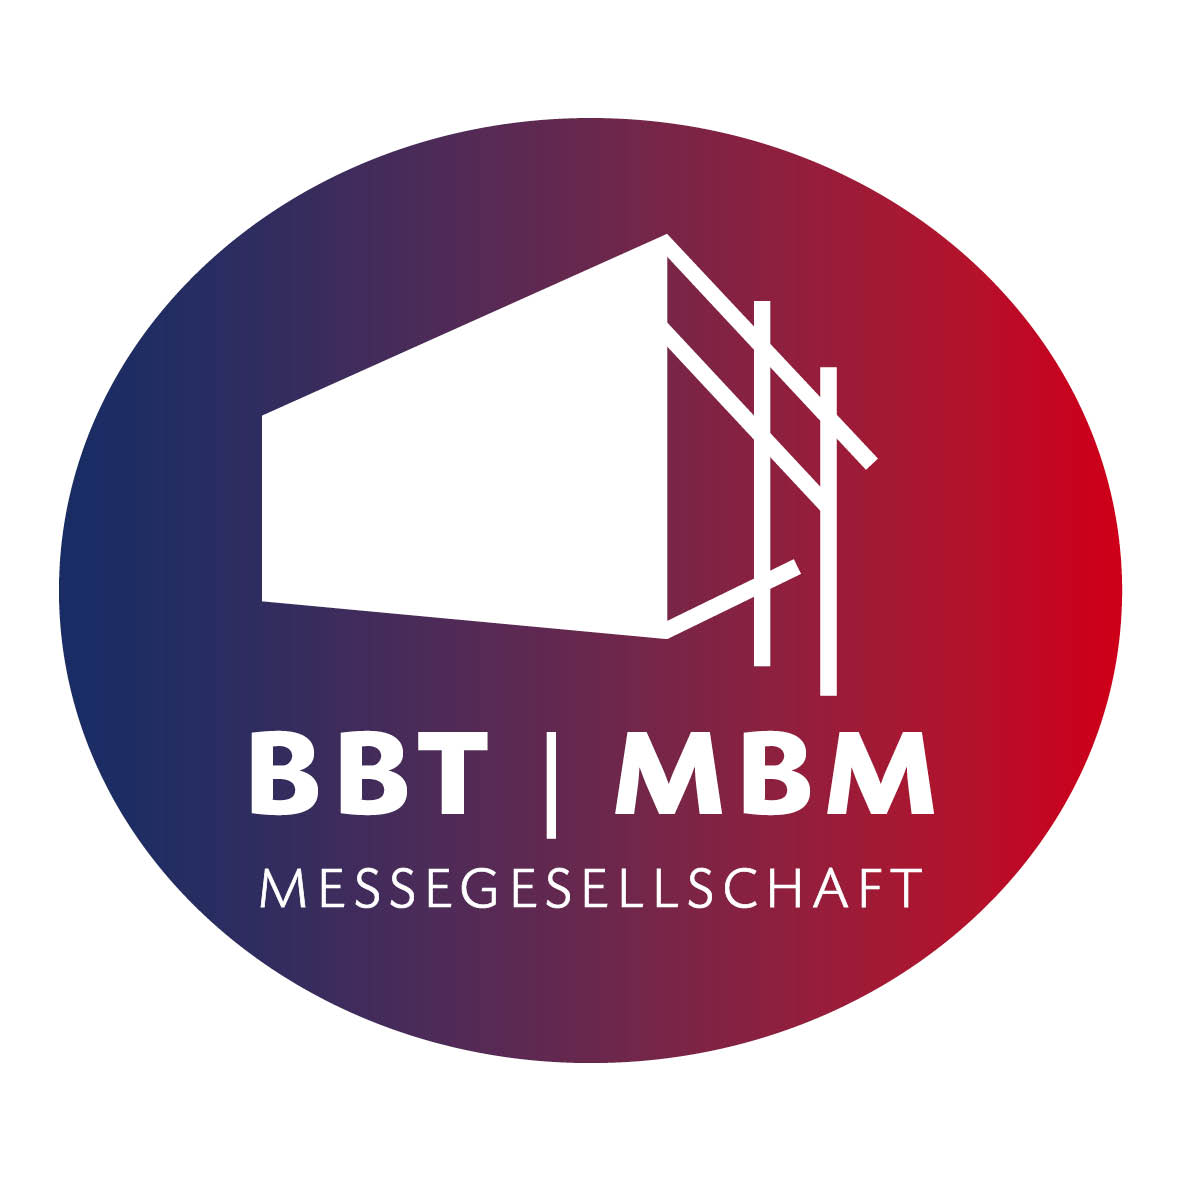 BBT & MBM Messegesellschaft GbR